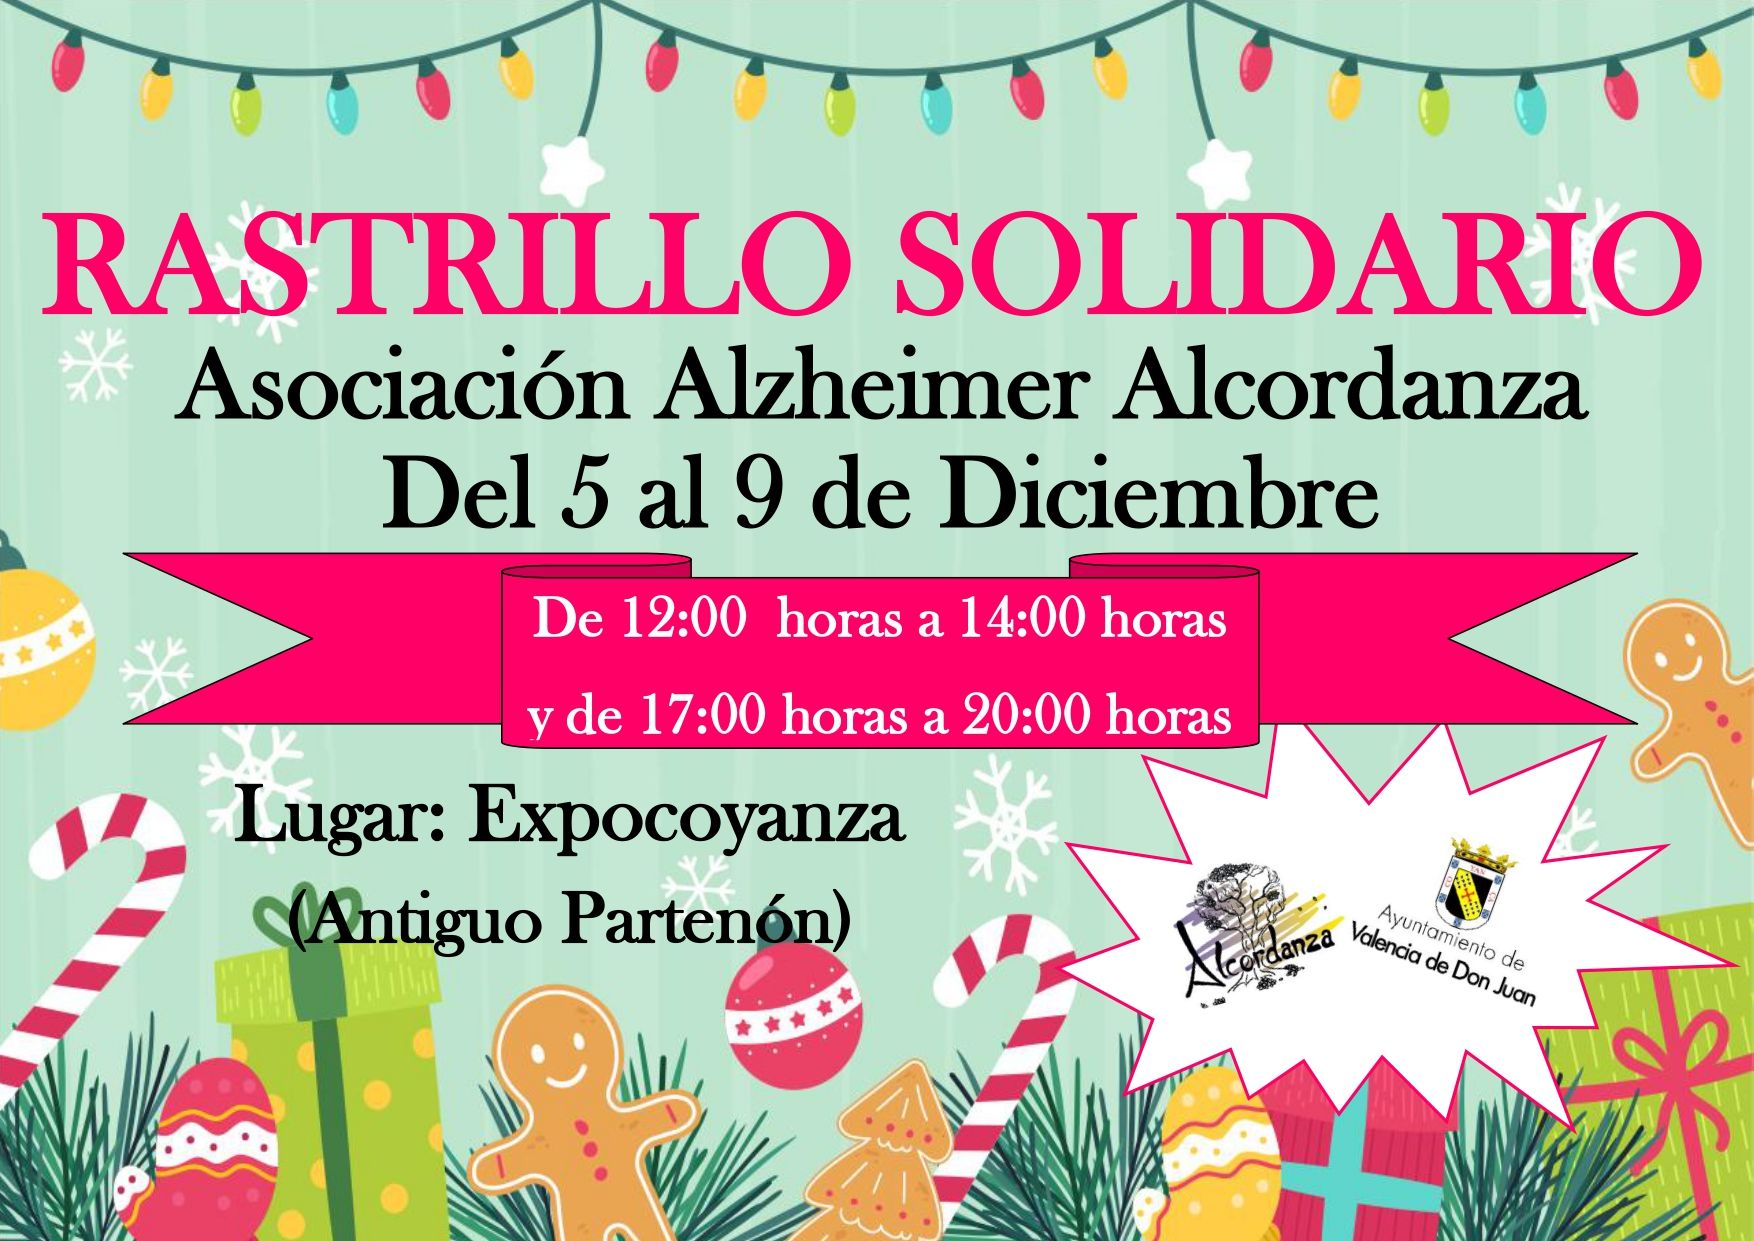 Rastrillo Solidario a favor de la Asociación de Alzheimer Alcordanza